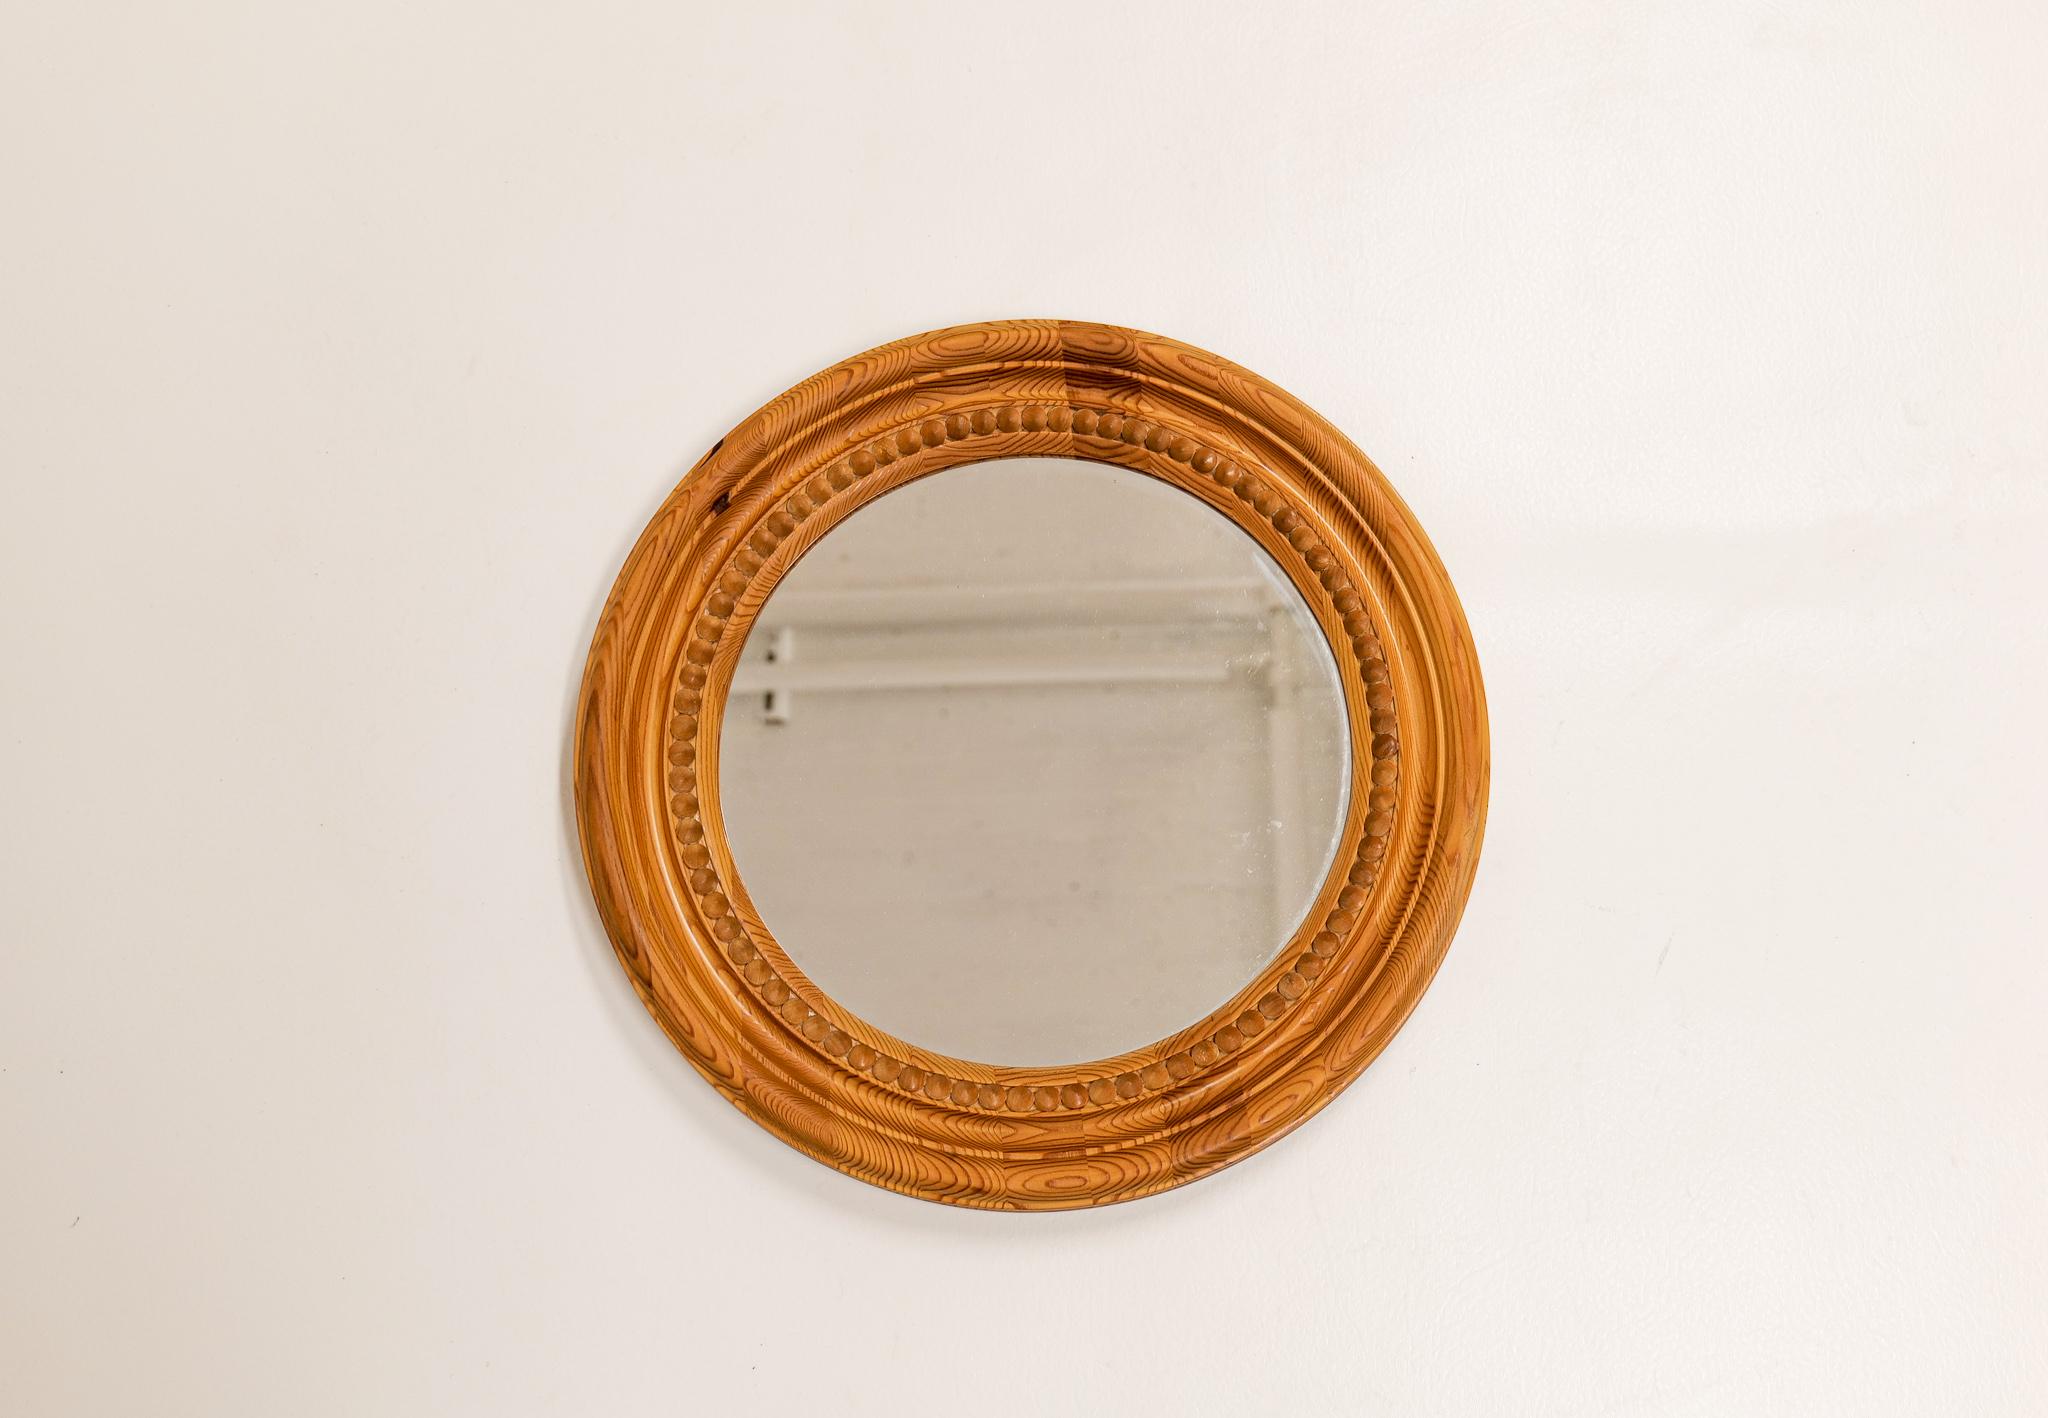 Miroir fabriqué en Suède dans les années 1970. Ce petit miroir sculpté, simple et merveilleux, est fabriqué en pin. 

Dimensions : Diamètre 42 cm, profondeur 4 cm.

 